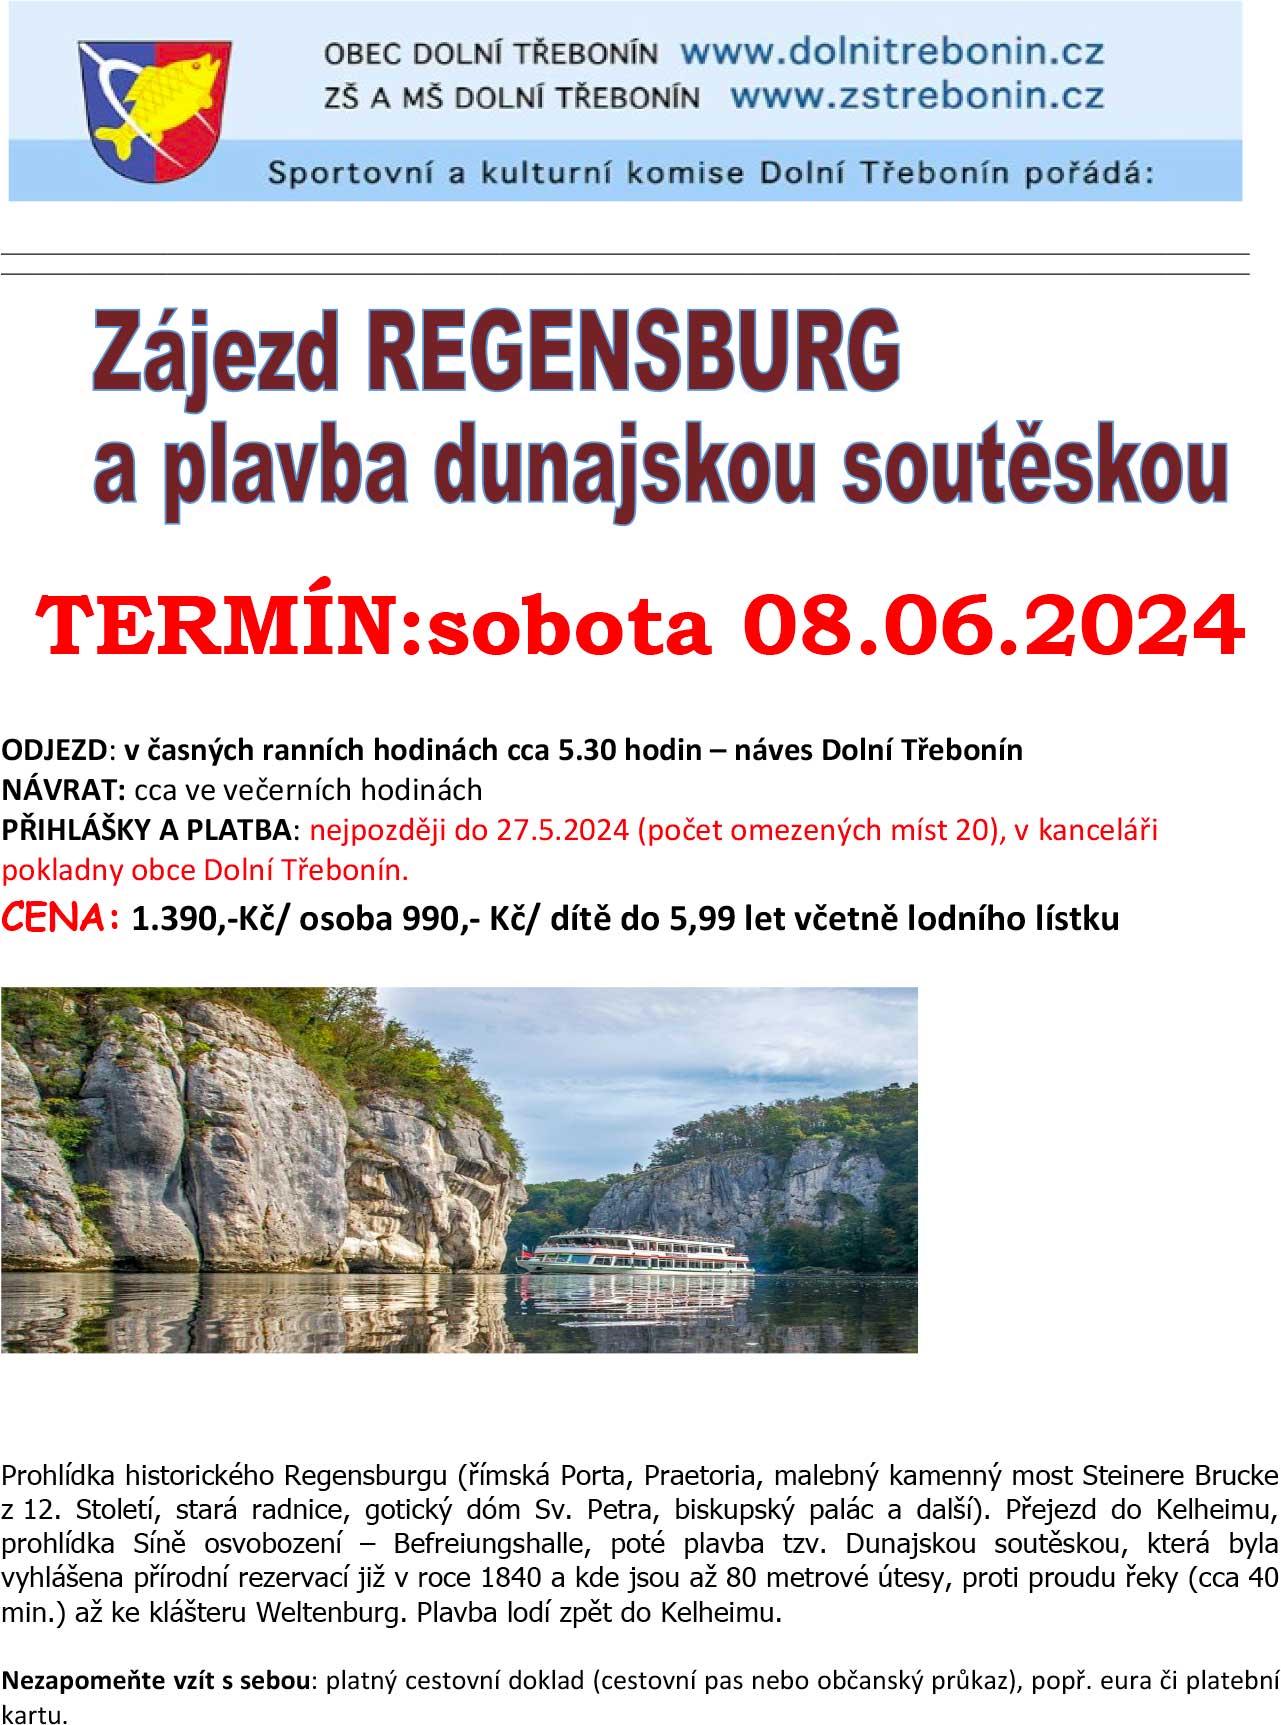 Zájezd Regensburg a plavba dunajskou soutěskou 8. 6. 2024